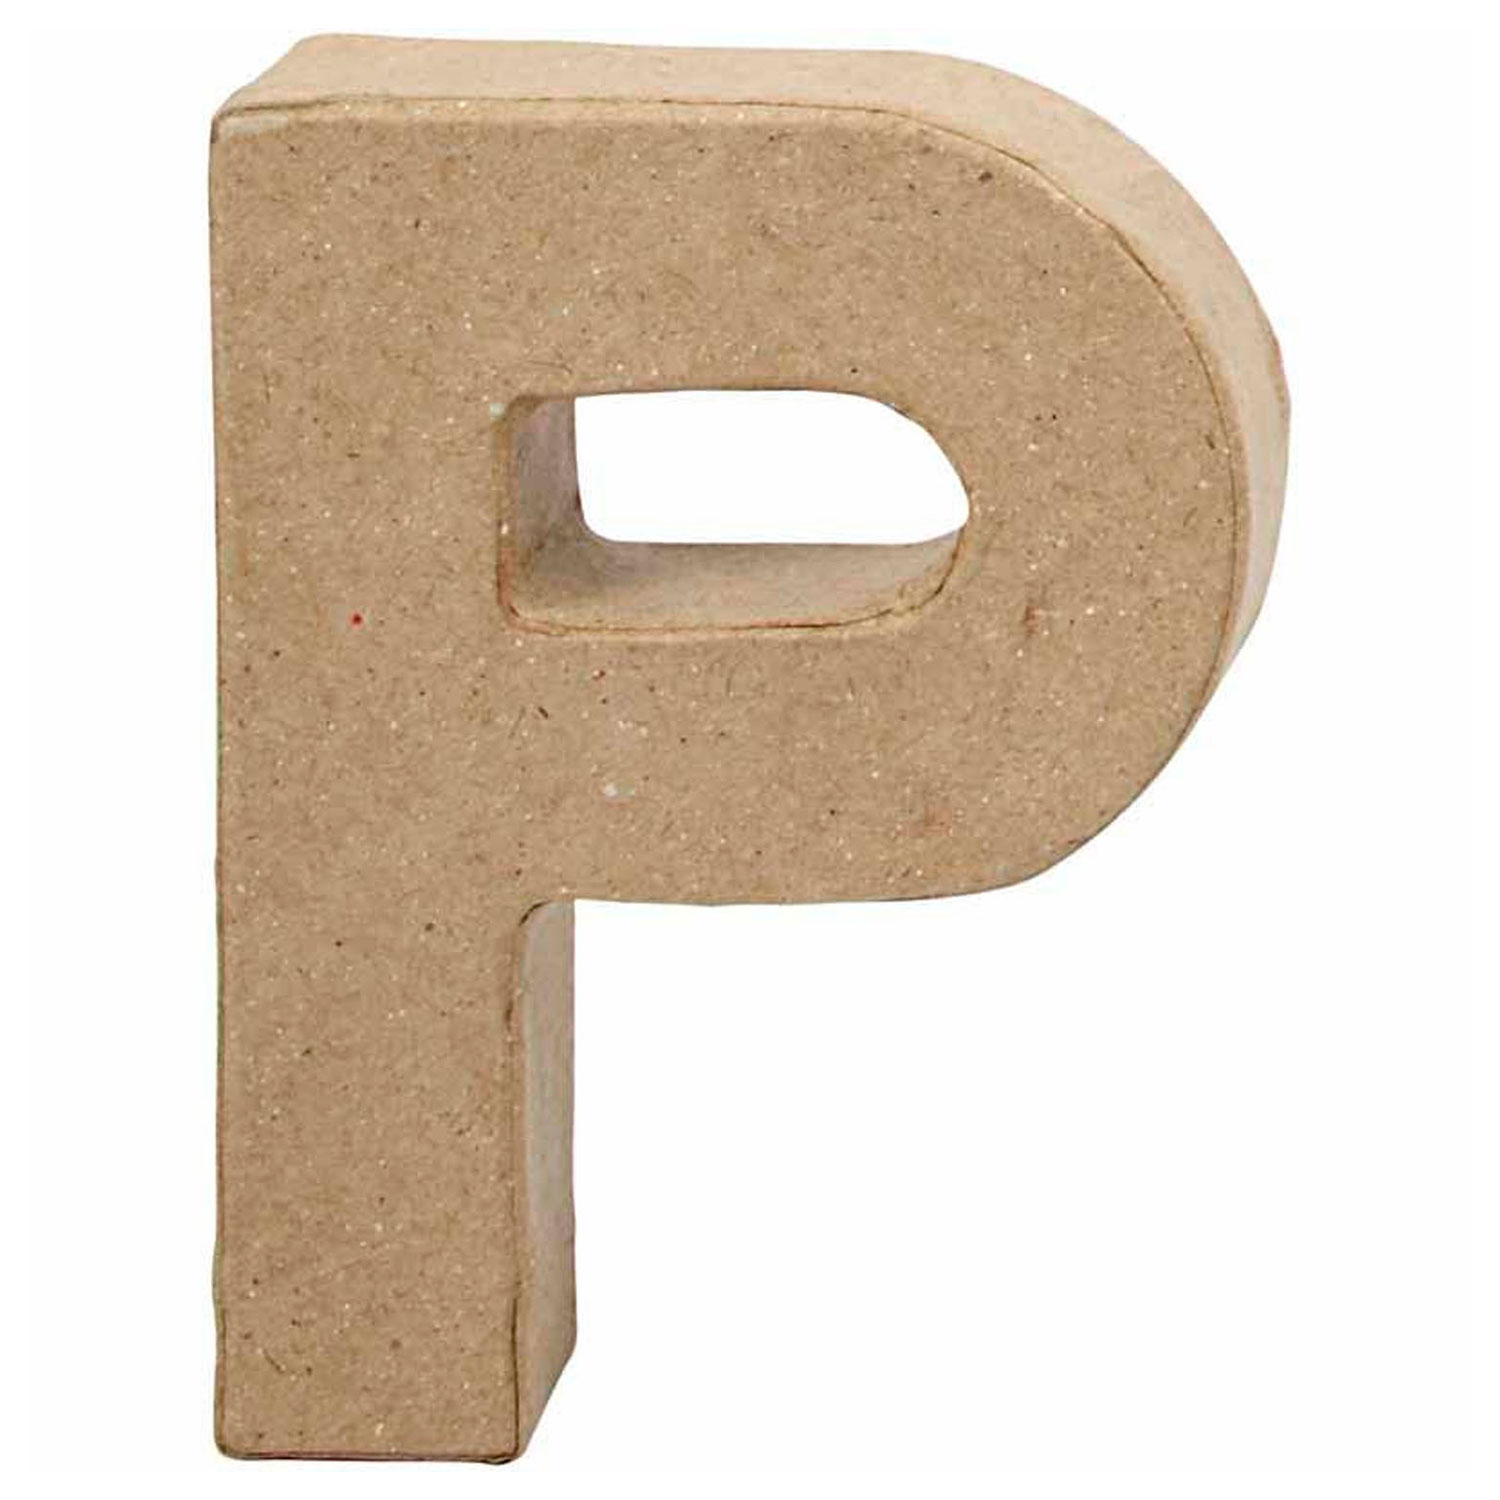 Letter Papier-maché - P